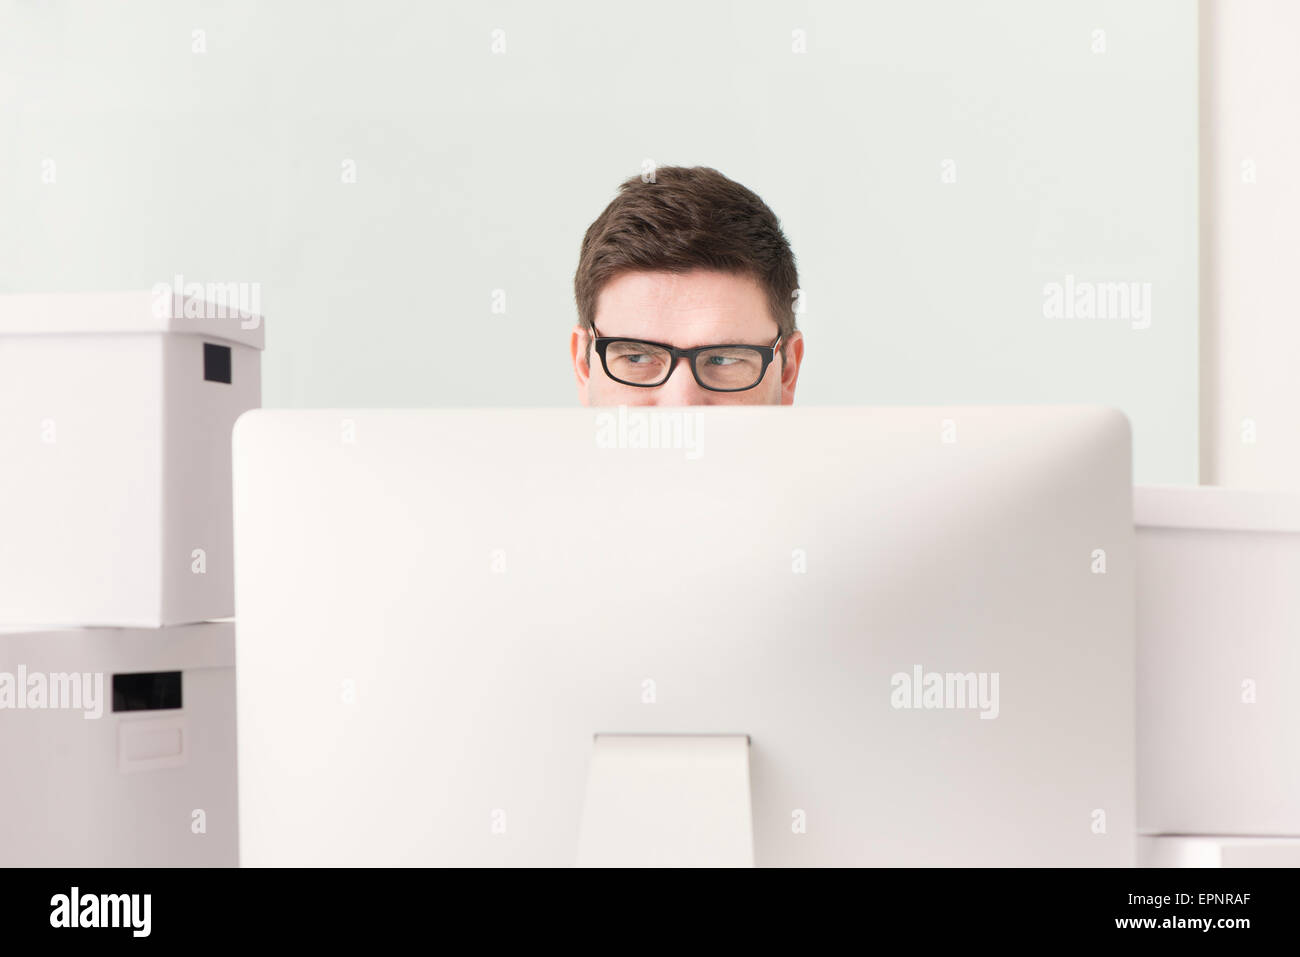 Imprenditore lavora con il computer alla scrivania. Egli è circondato da caselle bianche utilizzati per la movimentazione. Immagine concettuale del business Foto Stock